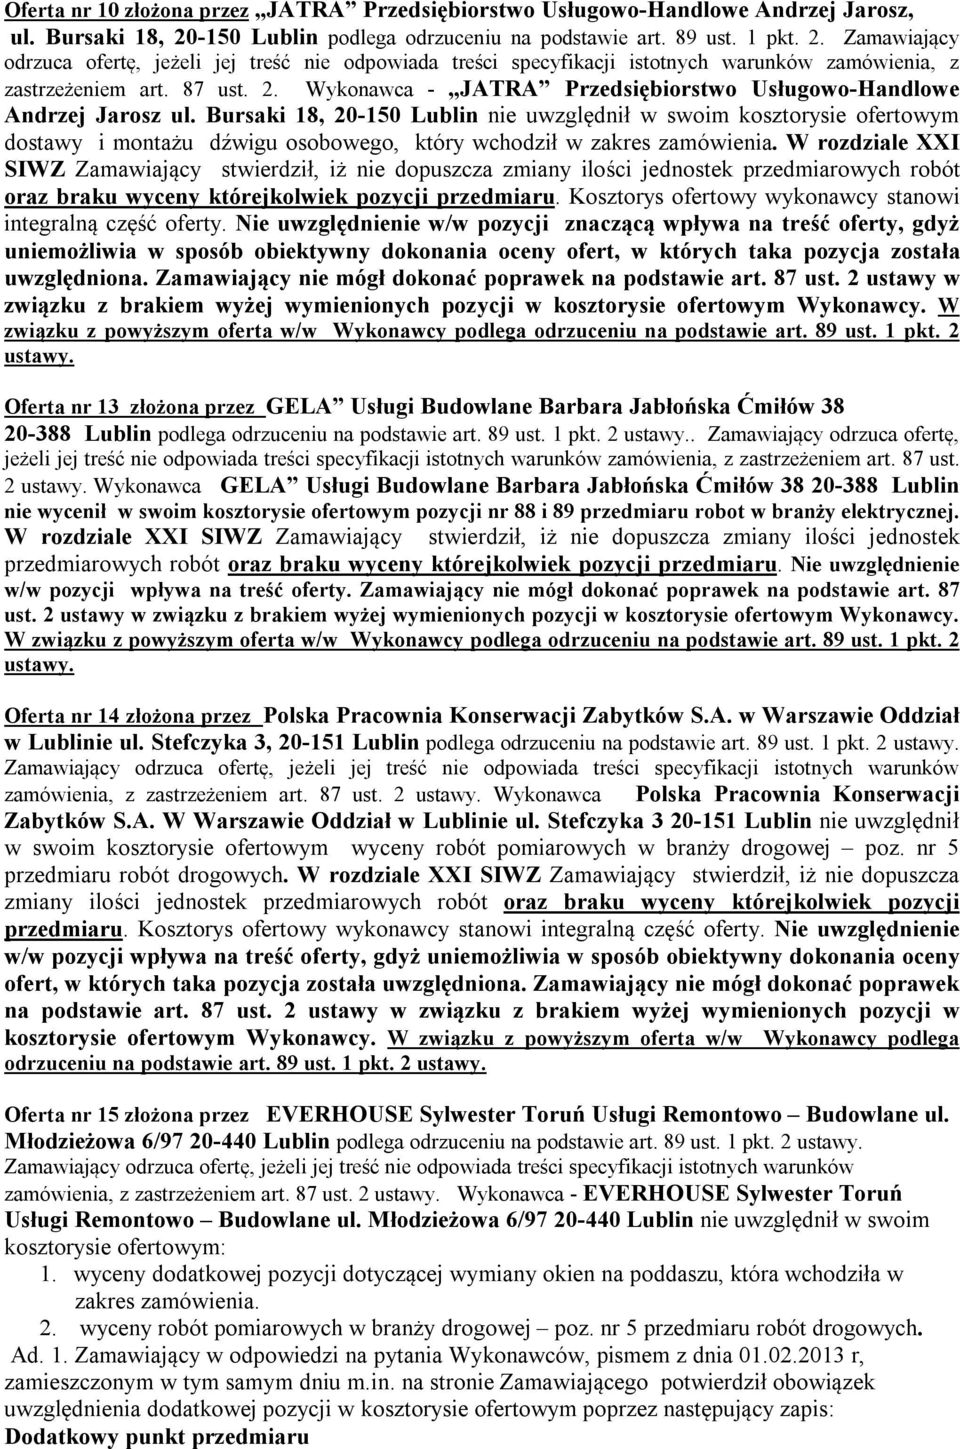 Bursaki 18 20-150 Lublin nie uwzględnił w swoim kosztorysie ofertowym dostawy i montażu dźwigu osobowego który wchodził w W rozdziale XXI SIWZ Zamawiający stwierdził iż nie dopuszcza zmiany ilości